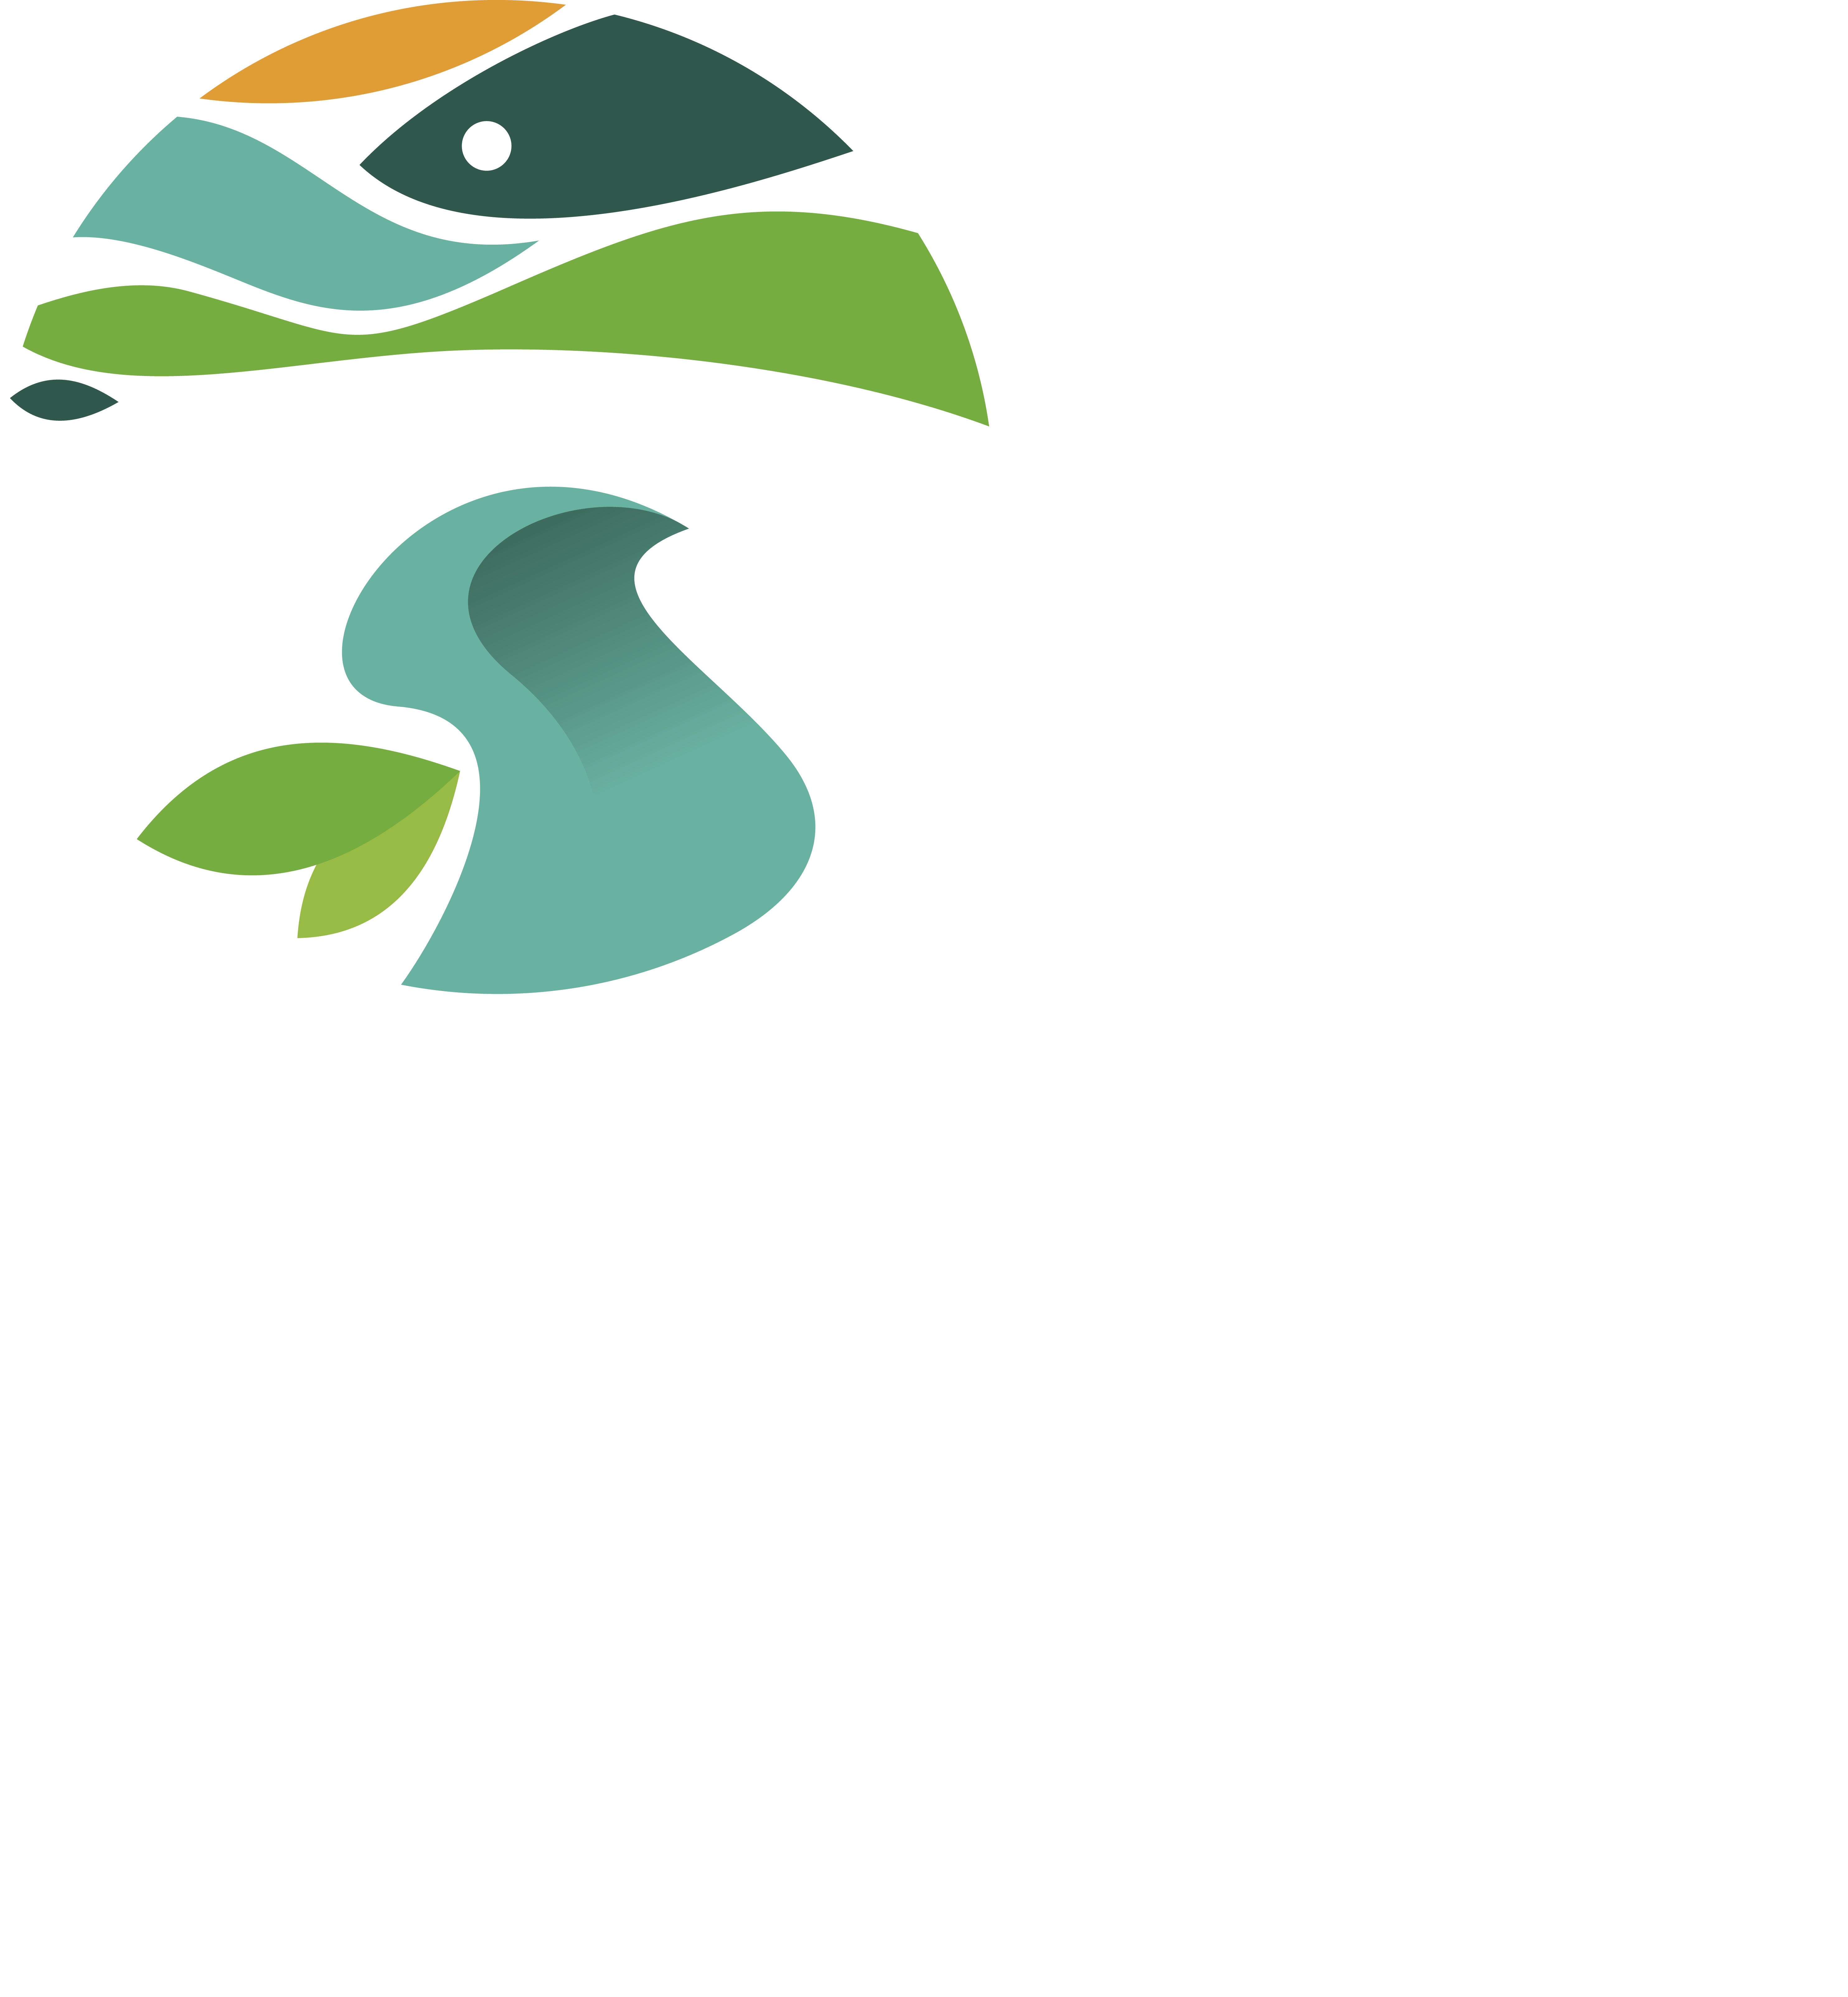 CM Sever do Vouga